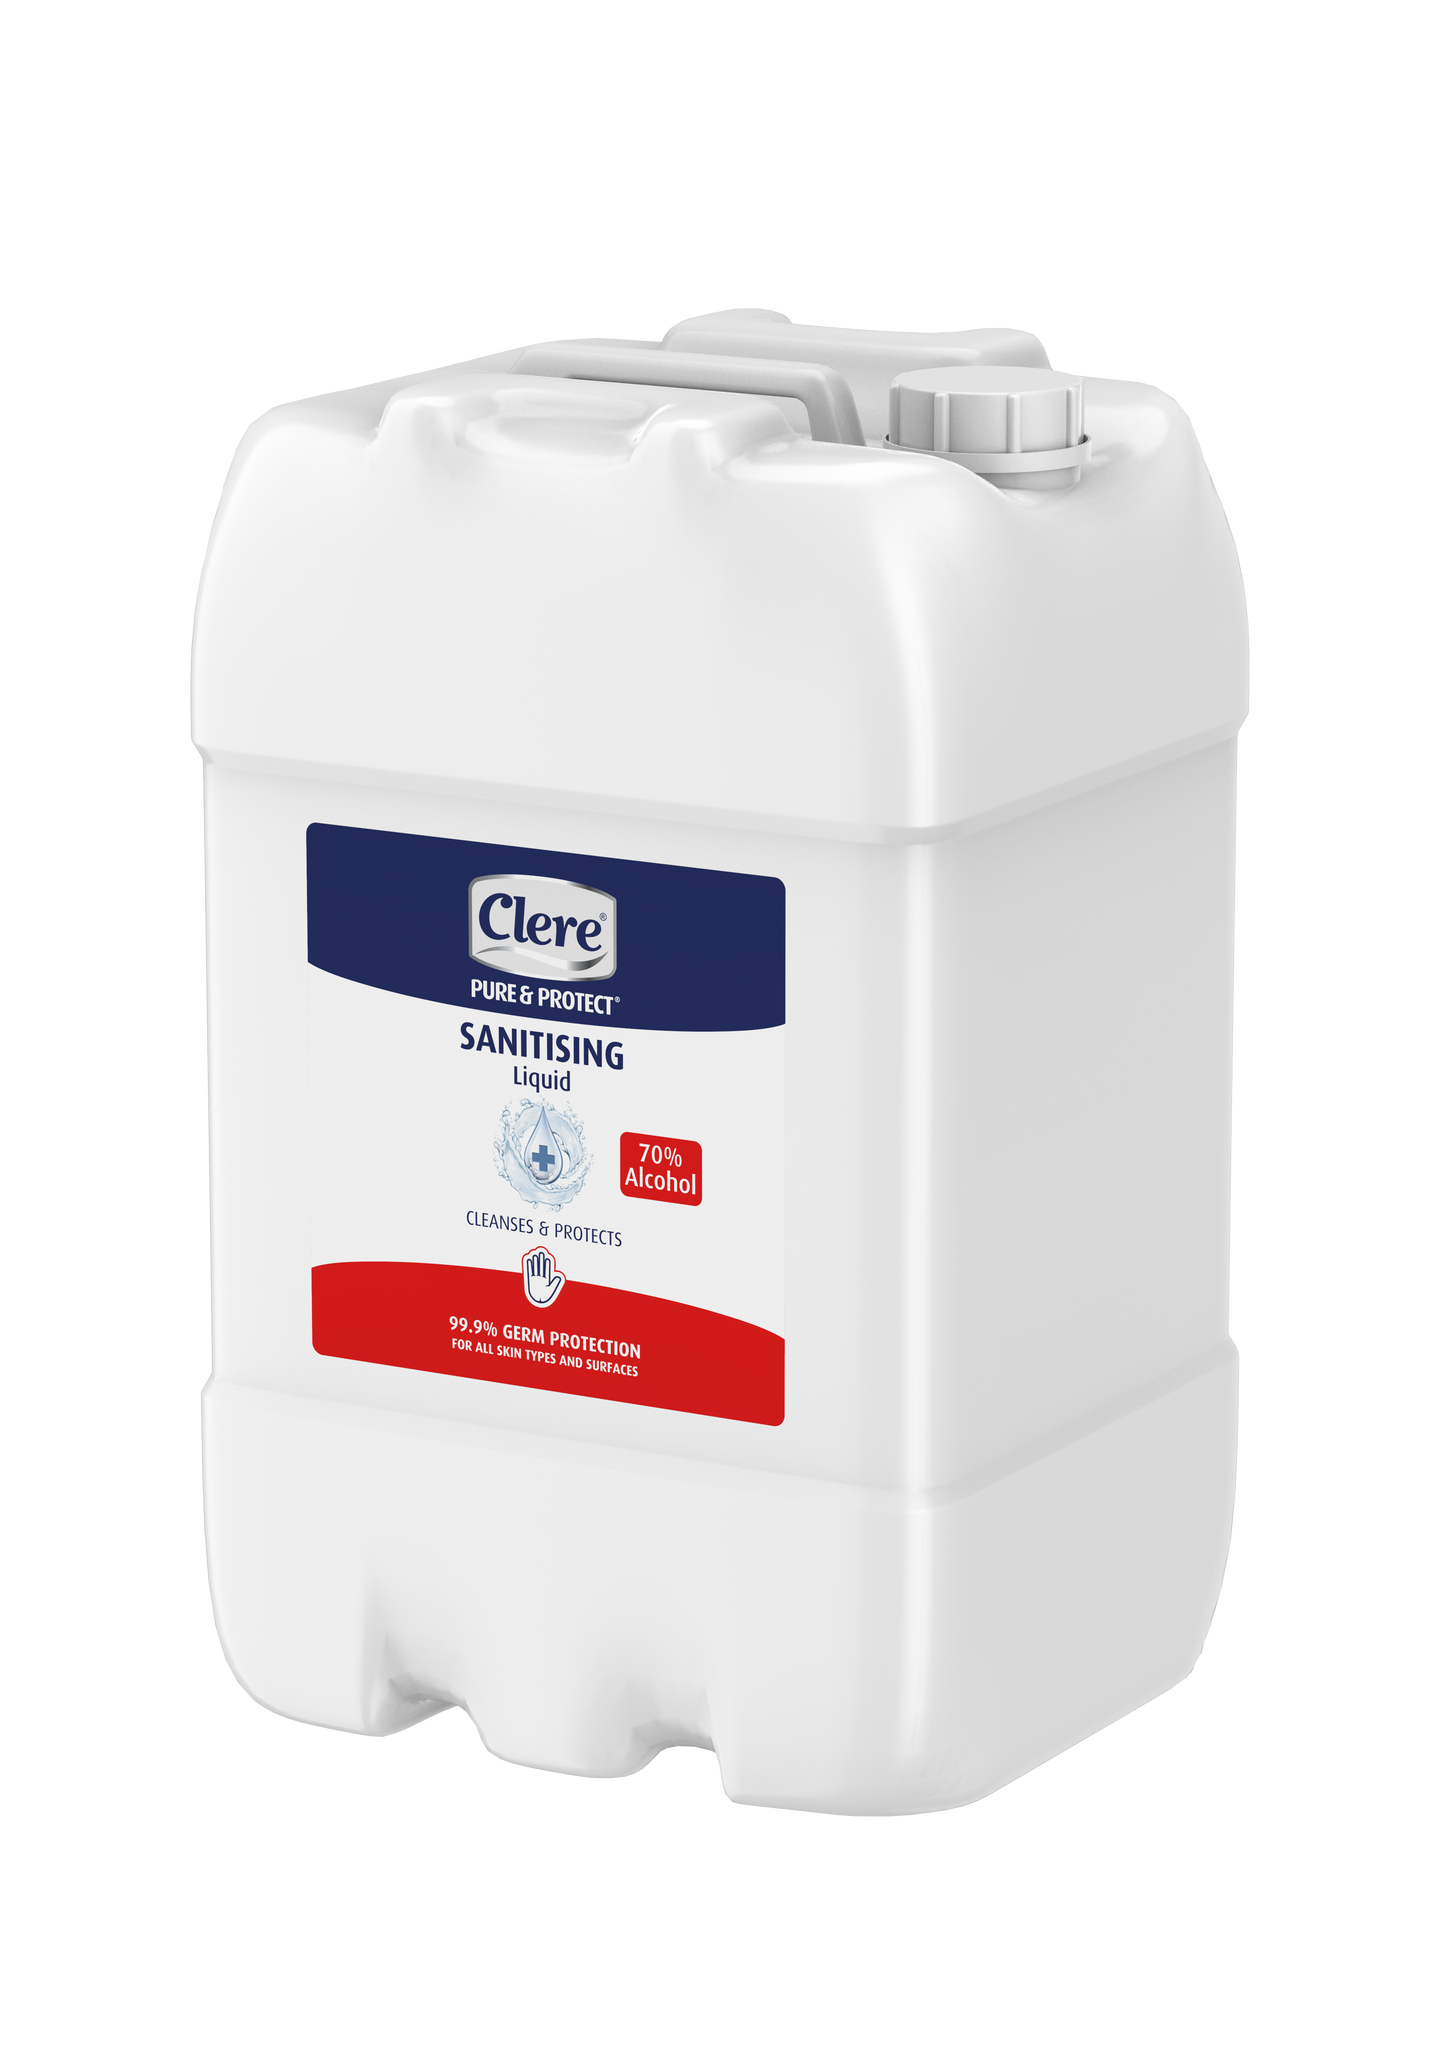 Clere Pure & Protect Sanitising Liquid (70%) - Liquid - 25L